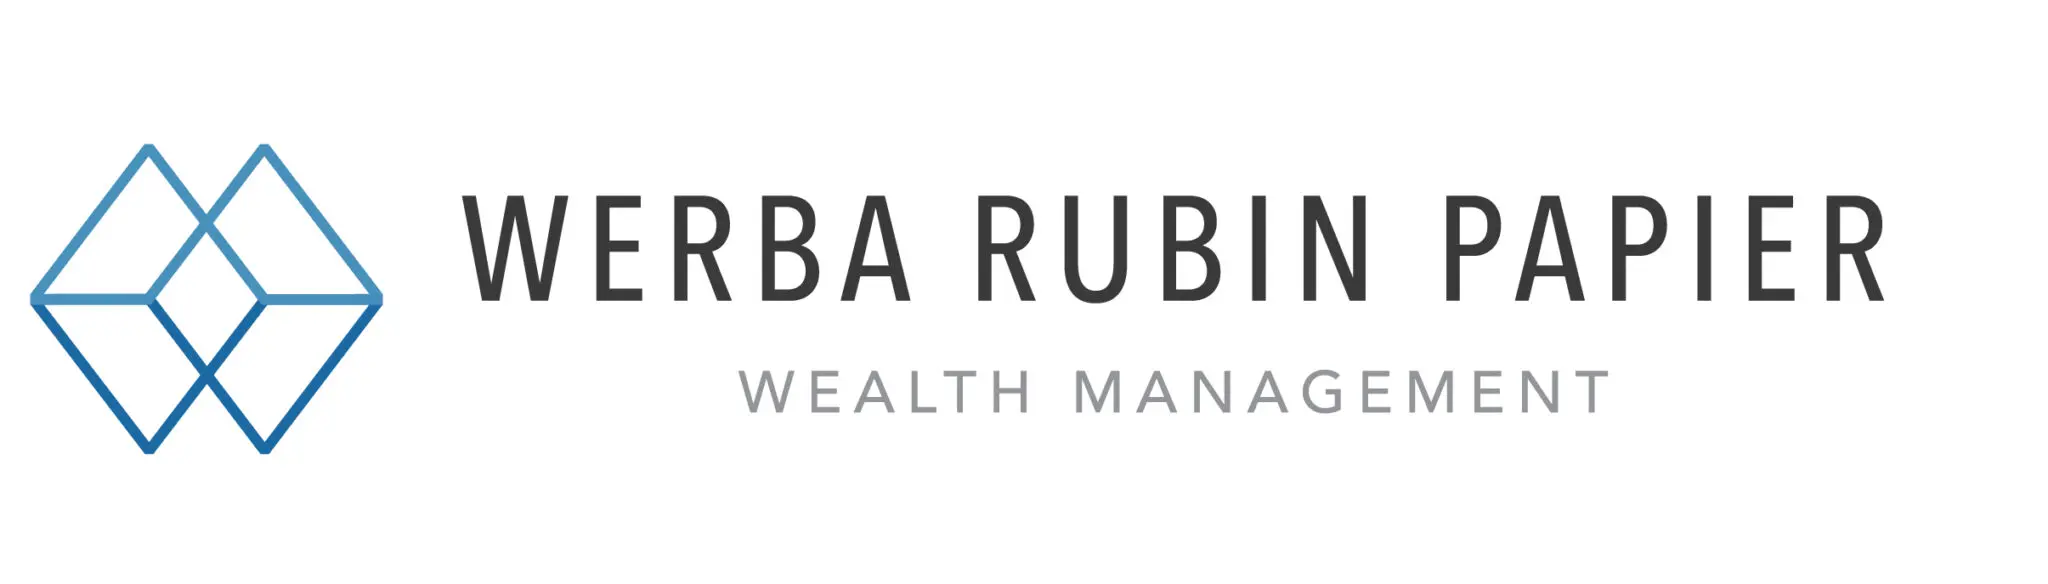 Werba Rubin Papier Wealth Management